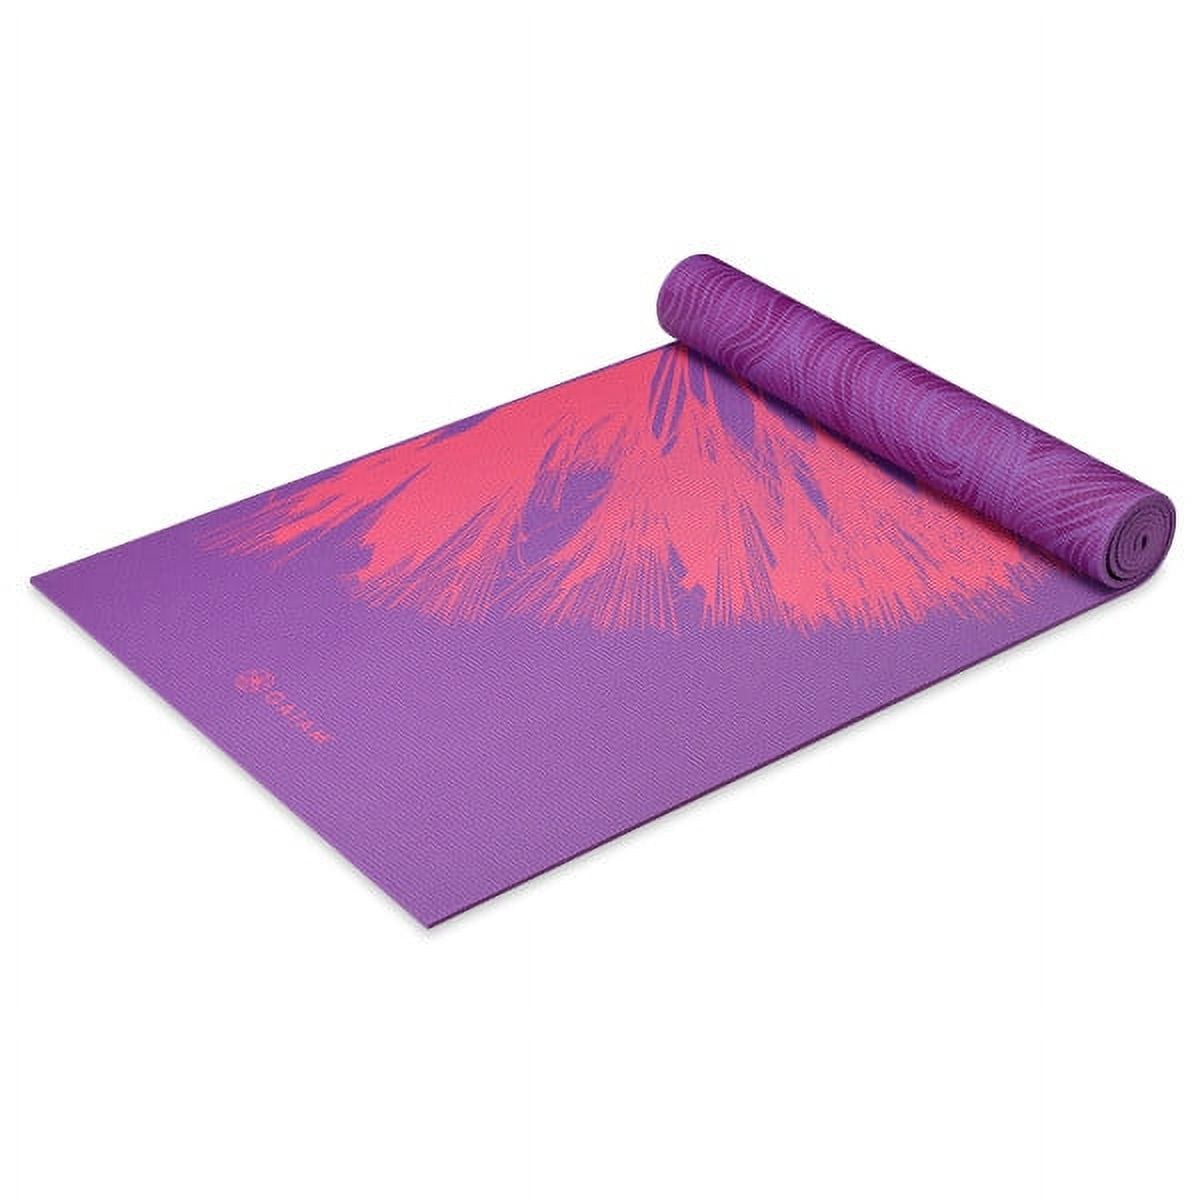 Gaiam Premium Print Reversible Yoga Mat, Boho Folk, 6mm 